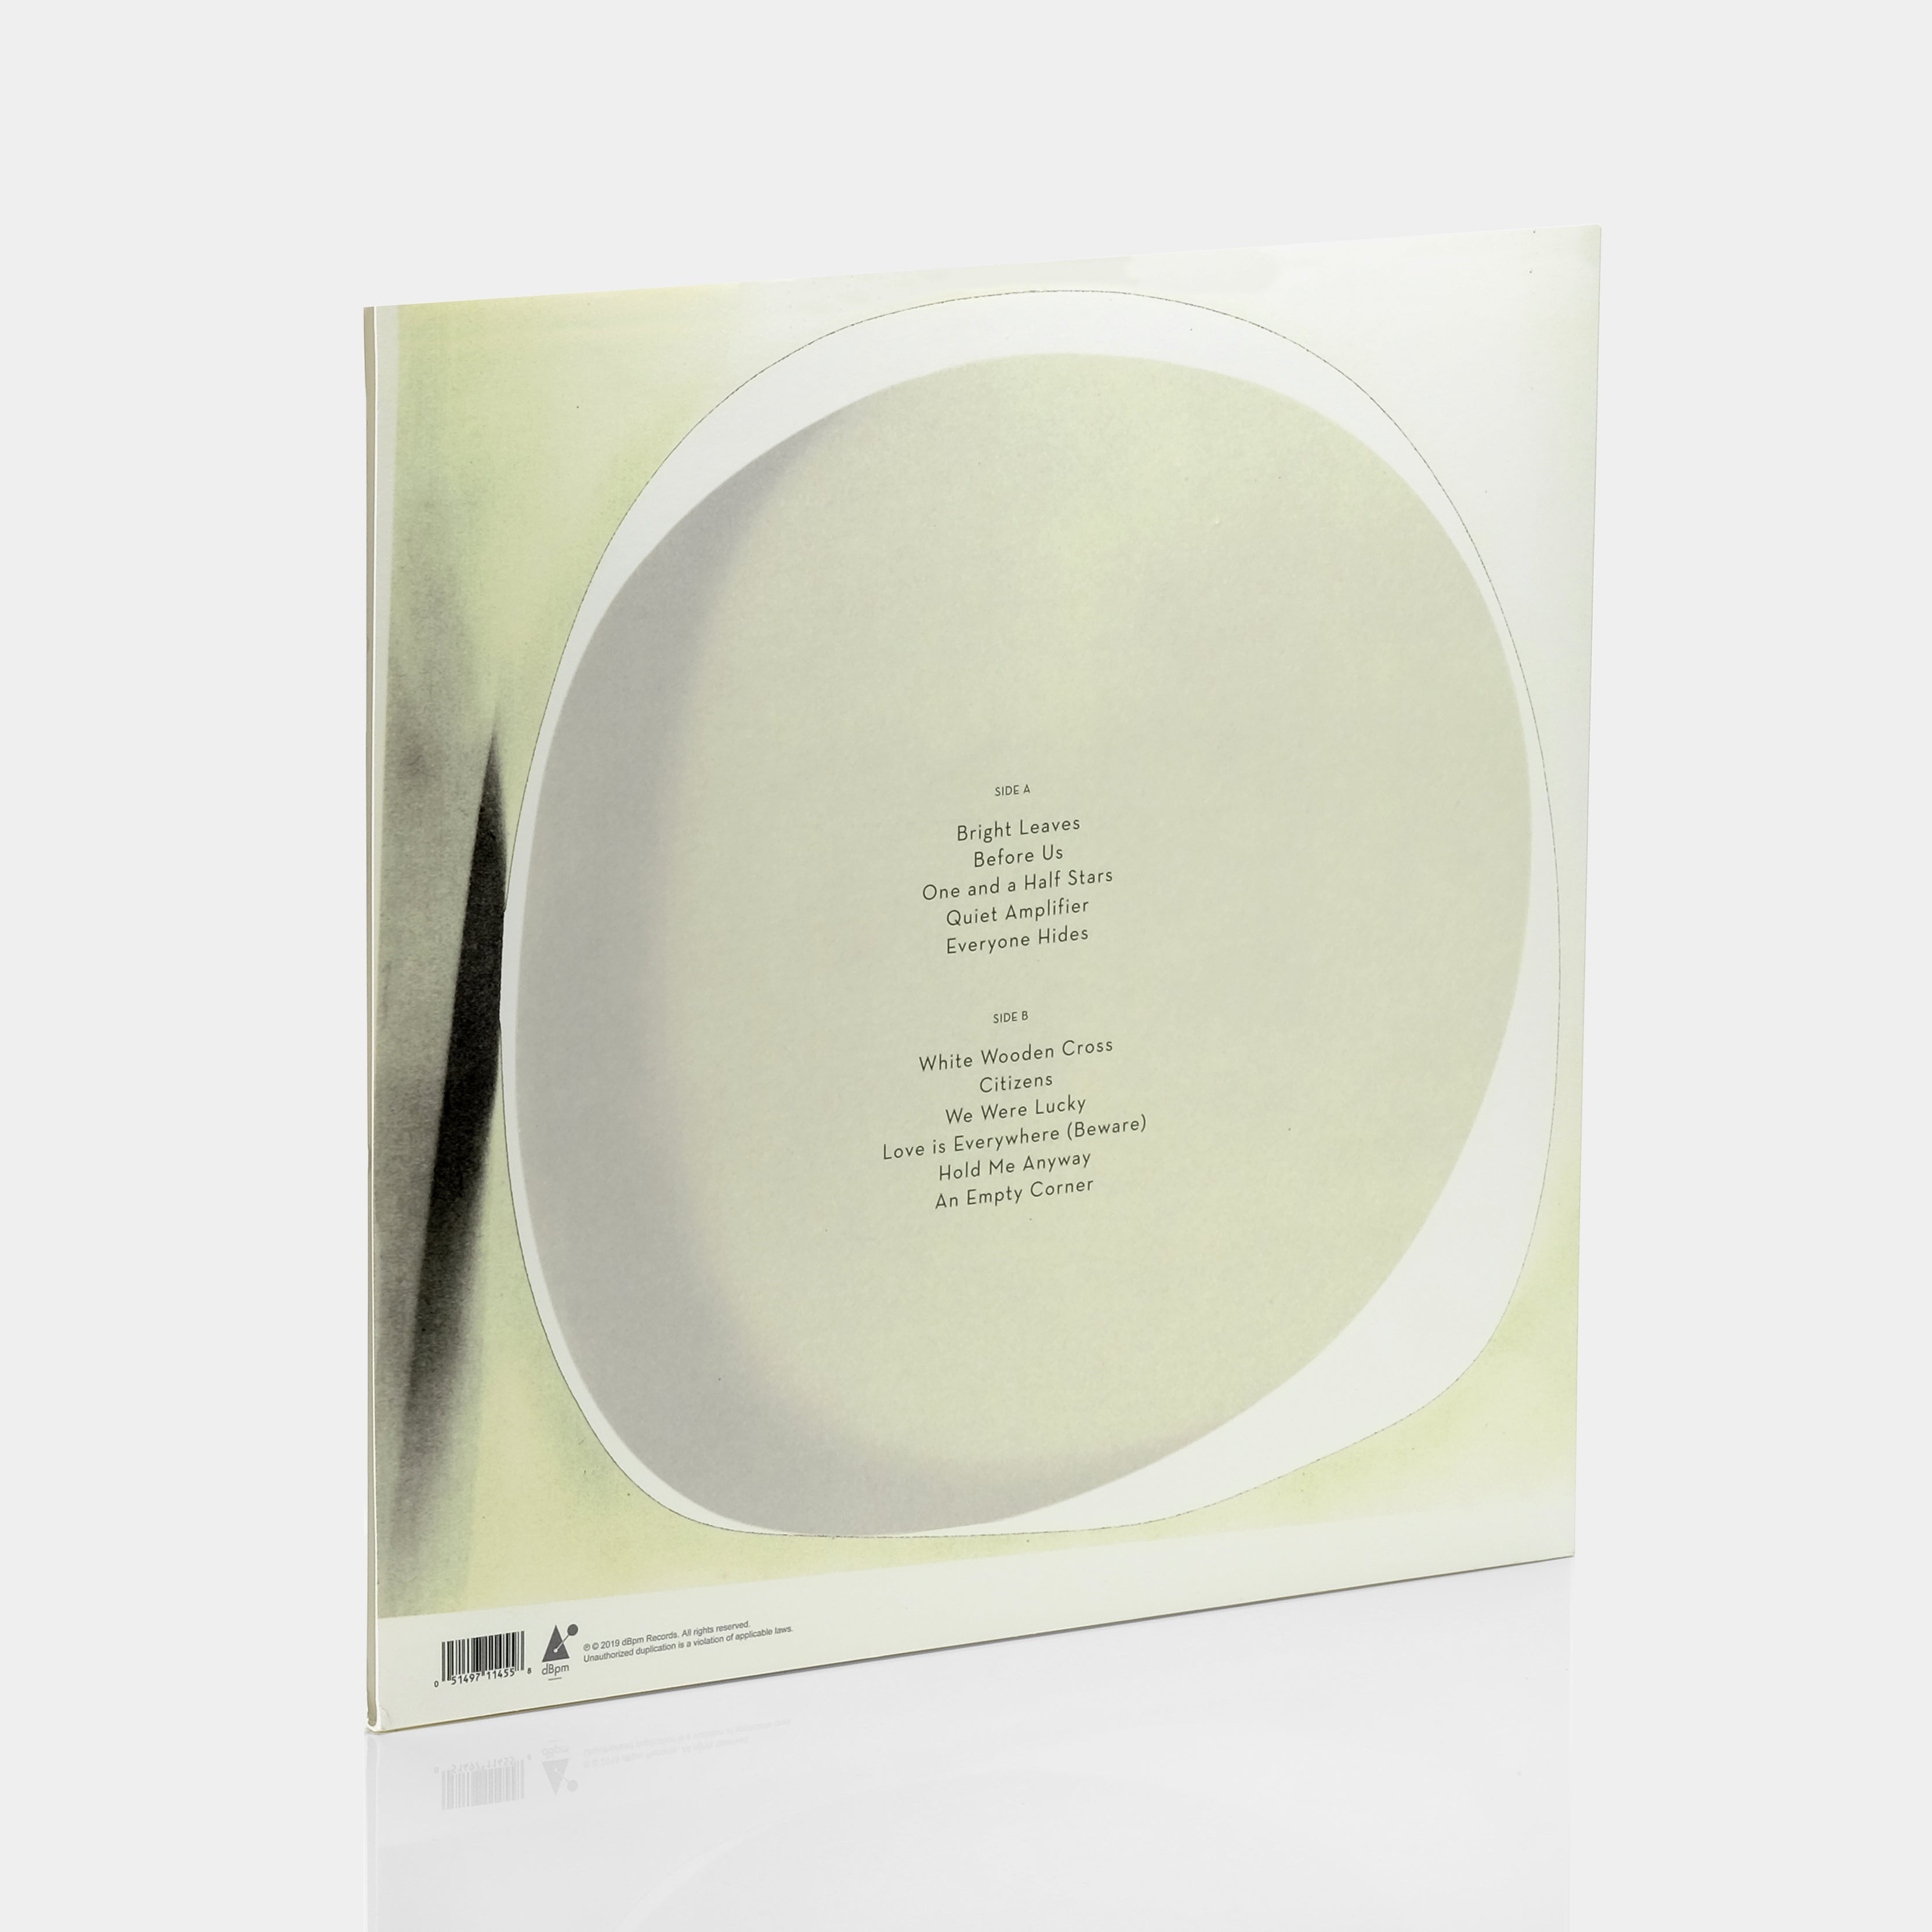 Wilco - Ode To Joy LP White Vinyl Record